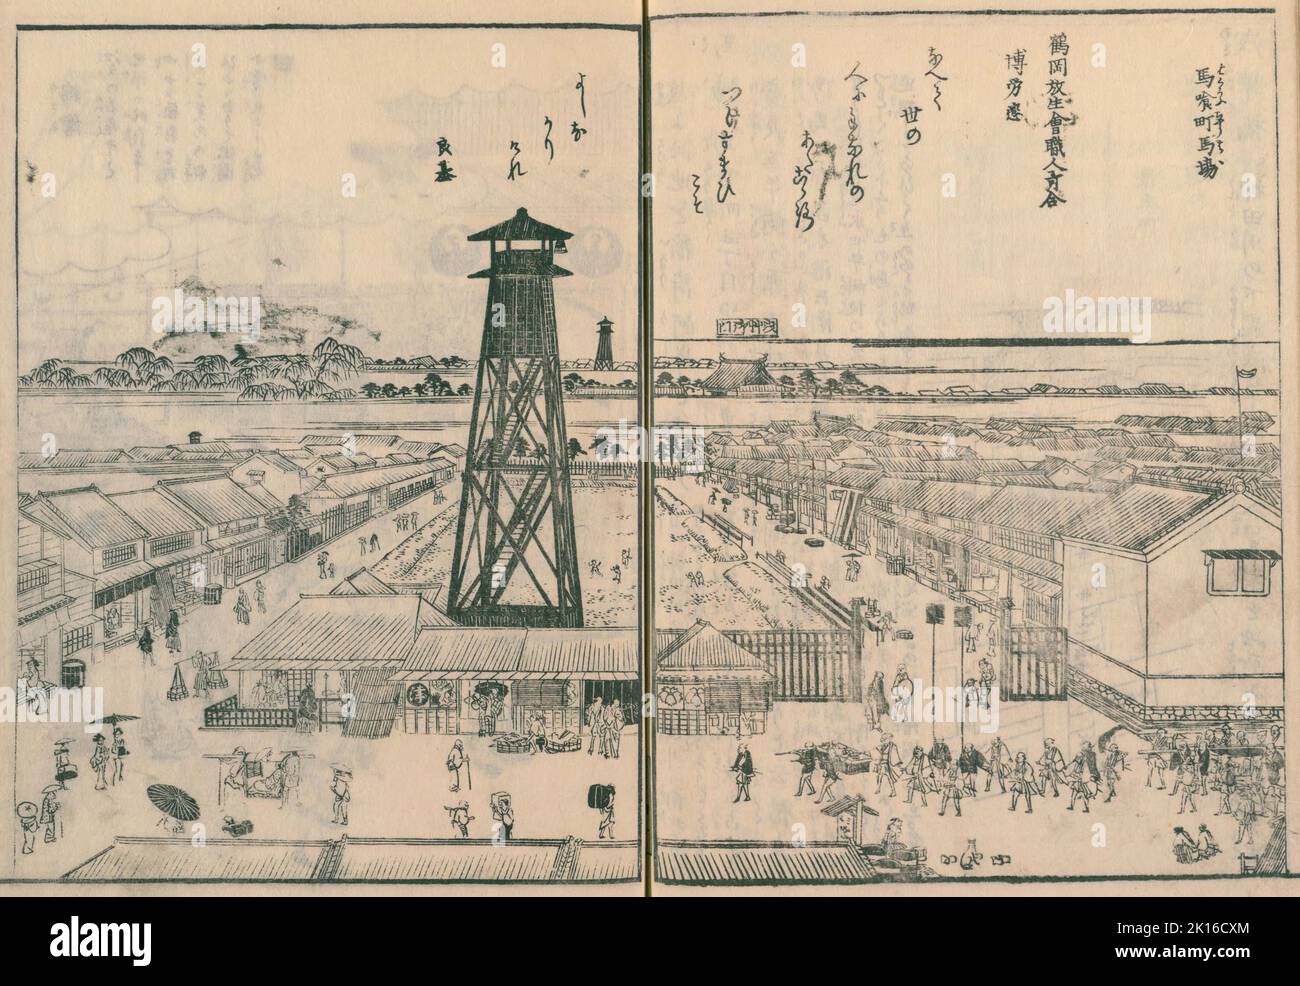 Bakurochō baba, Hinomi yagura nach hirokōji Bakurochō (Pferdeplatz, Feuerwache und breite Straße), von Edo meisho zue (Führer zu berühmten Edo-Stätten), Erscheinungsdatum 1834-1836 Stockfoto